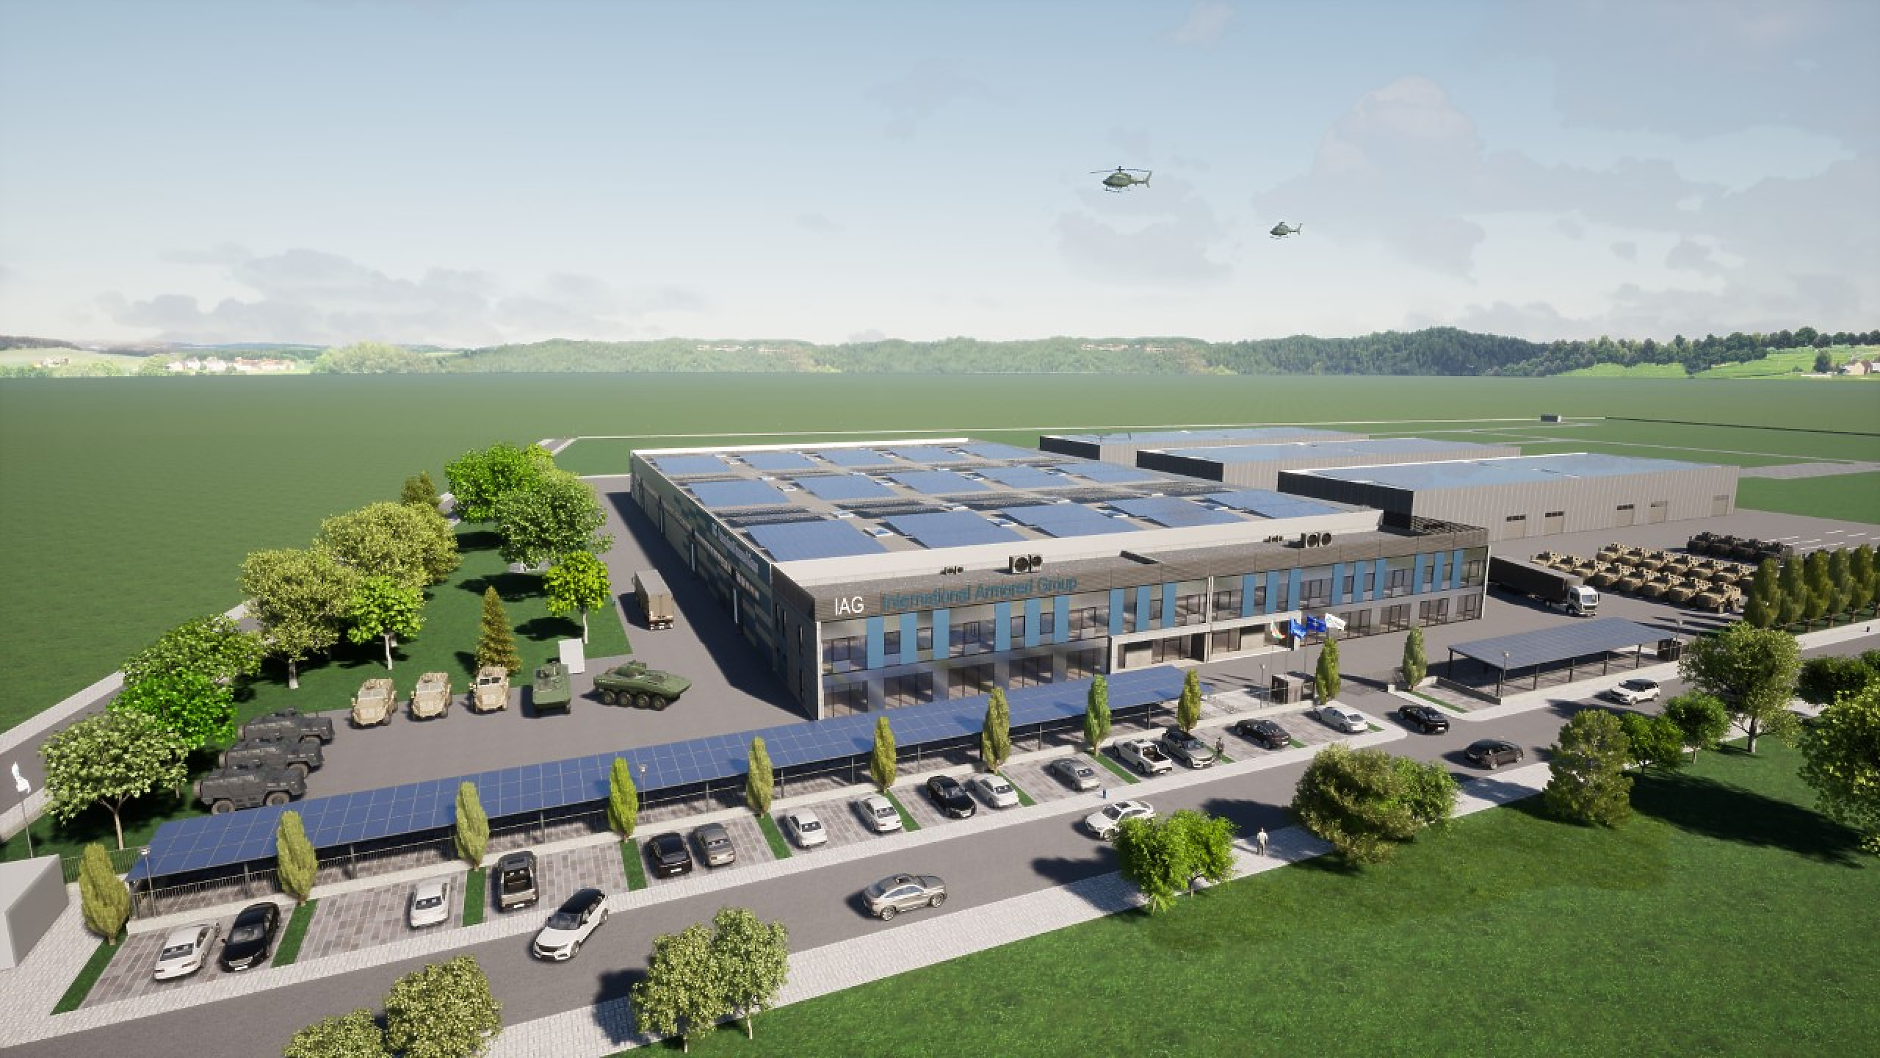 Американска компания започва строеж на завод за бронирани автомобили в Бургас